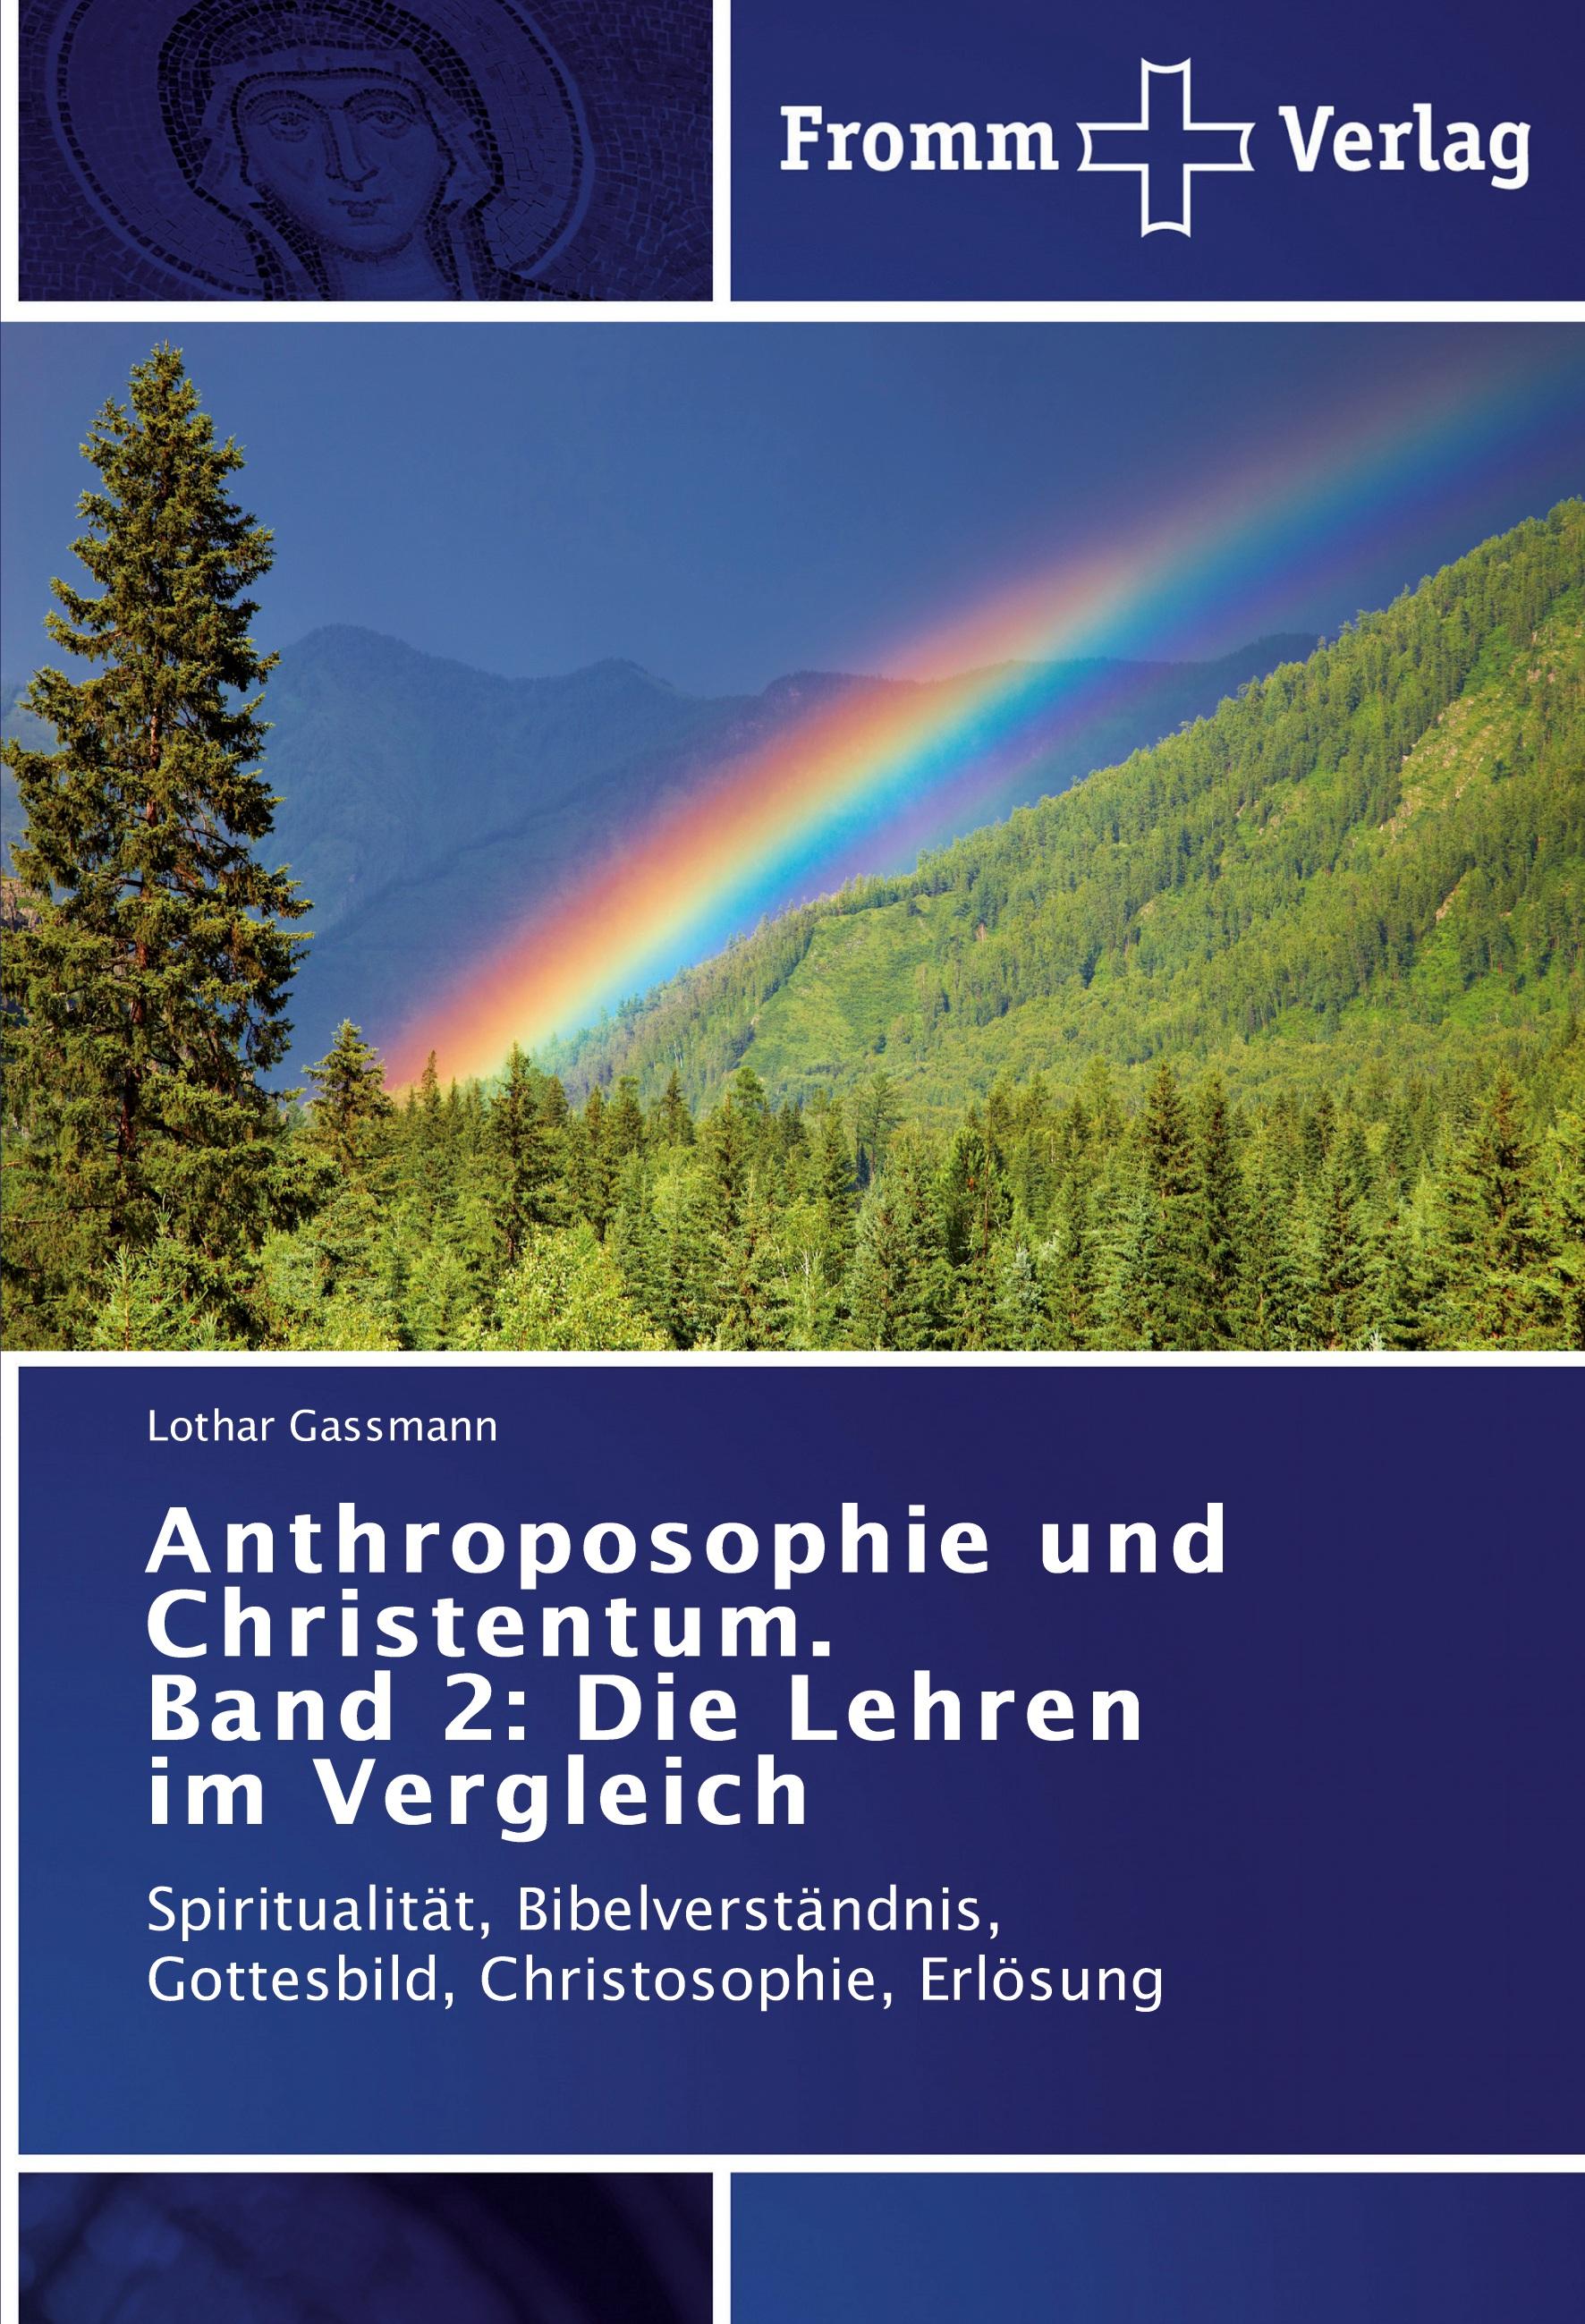 Anthroposophie und Christentum. Band 2: Die Lehren im Vergleich - Lothar Gassmann